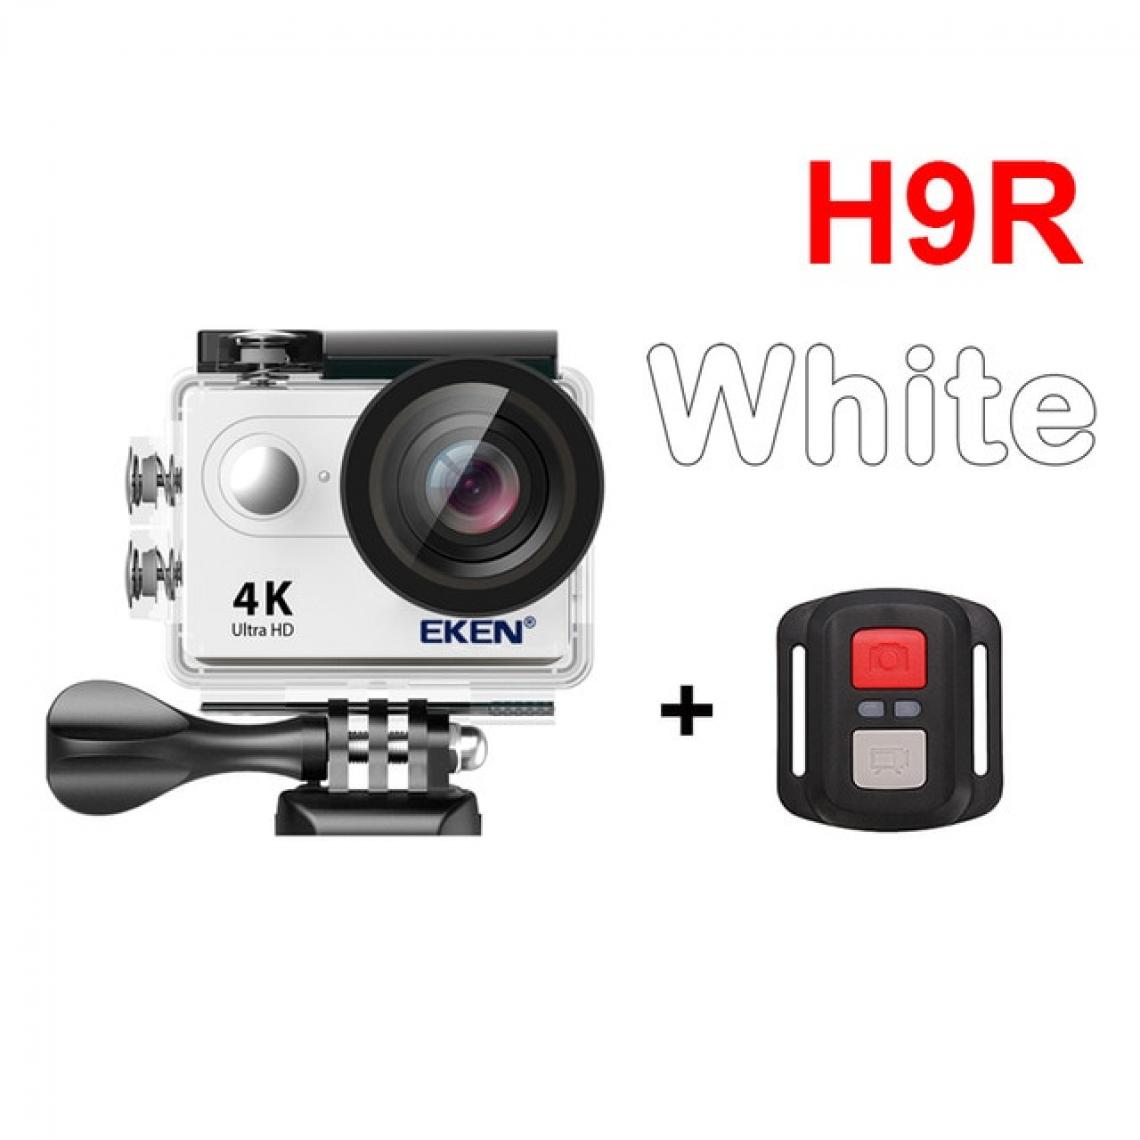 Universal - Caméra d &'action H9R Ultra HD 4K 30fps WiFi 2.0 pouces 170D Casque étanche Caméra vidéo Caméra d &'action | Eken H9 Caméra d &'action | Caméra d'action H9RH9 - Caméras Sportives